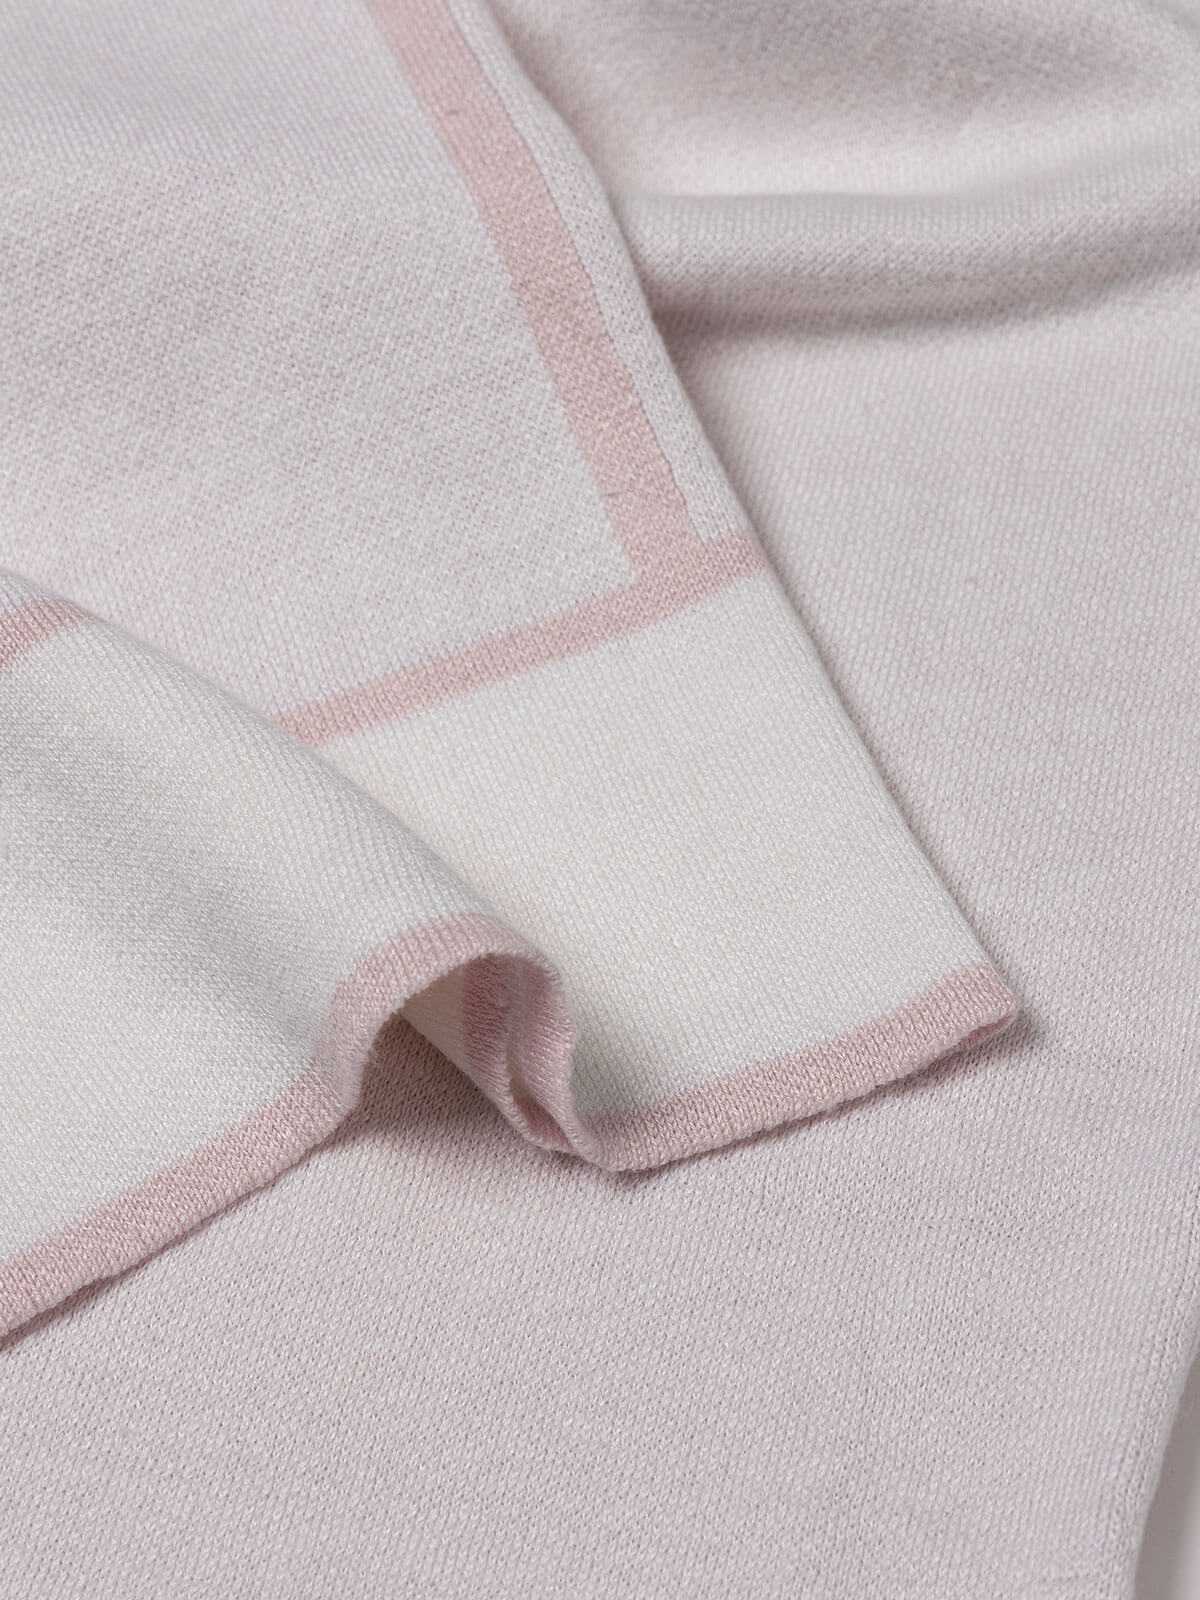 Kimono Pants fot woman 100% Capri white and pink linen pant detail